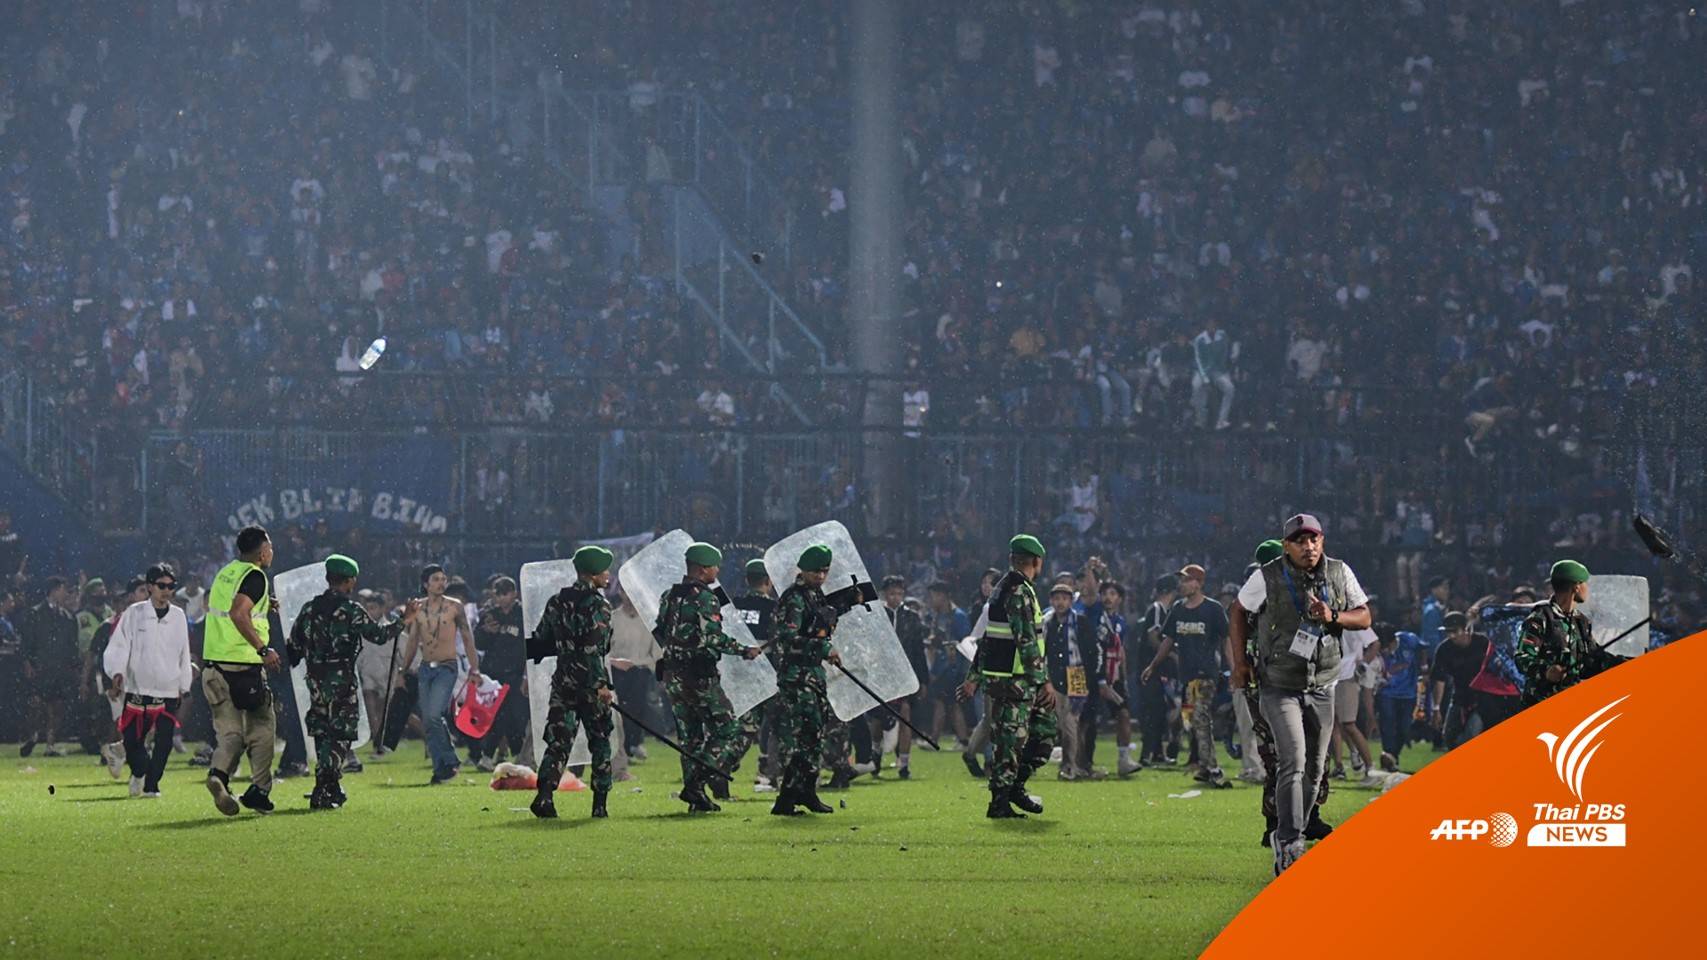 เกิดจลาจลในสนามฟุตบอลอินโดนีเซีย เสียชีวิตกว่า 120 คน